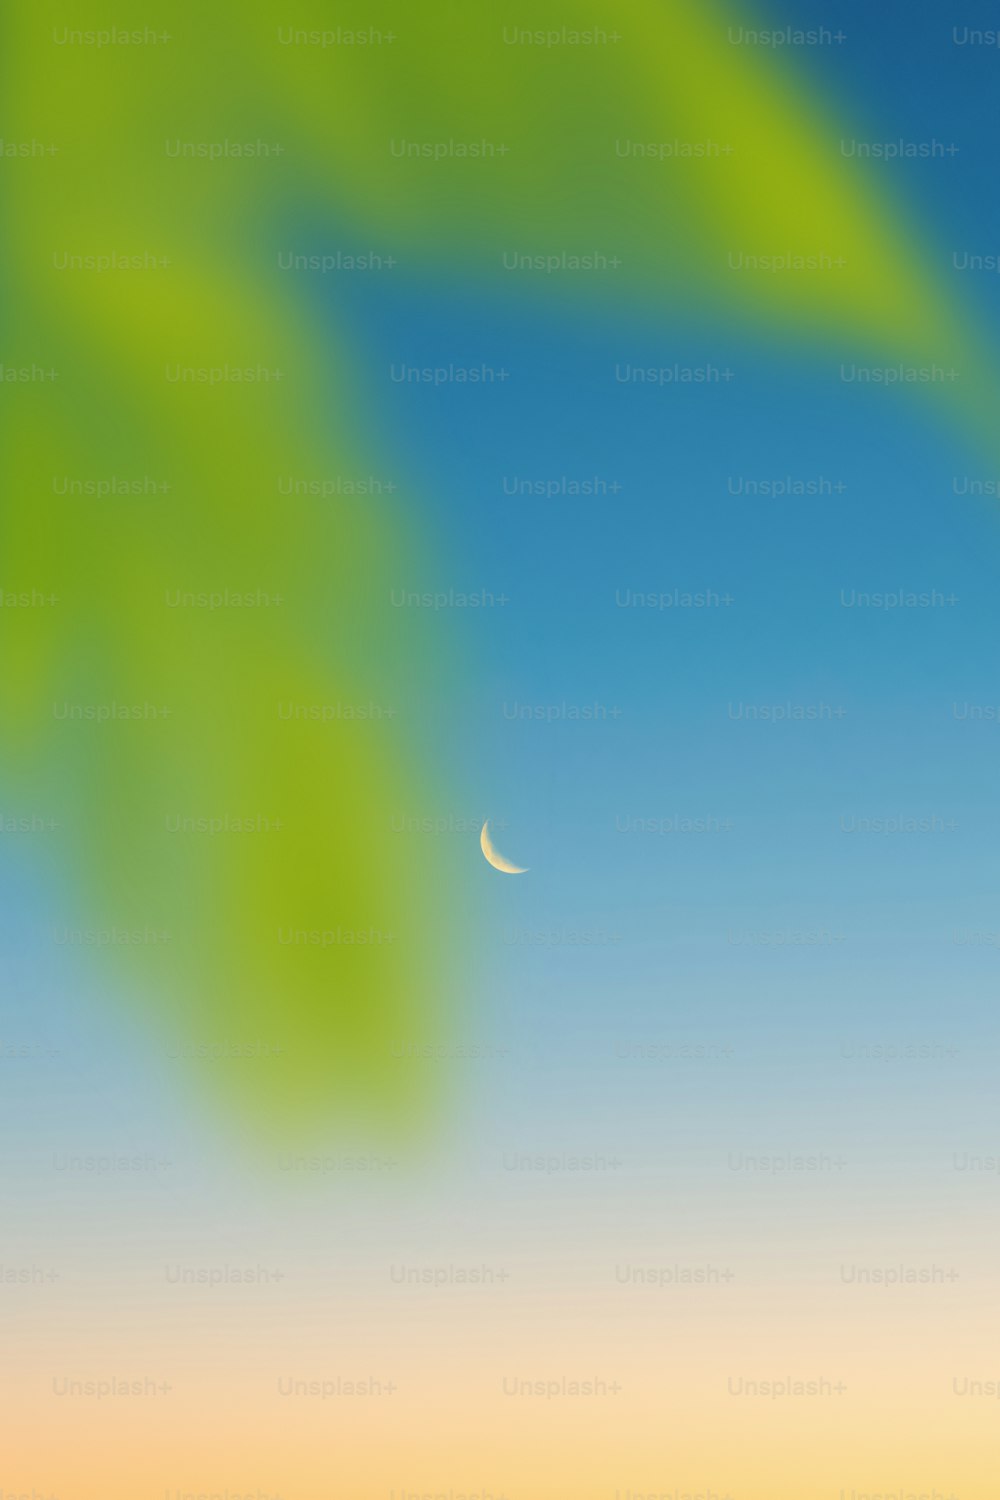 Una imagen borrosa de una hoja verde y una media luna